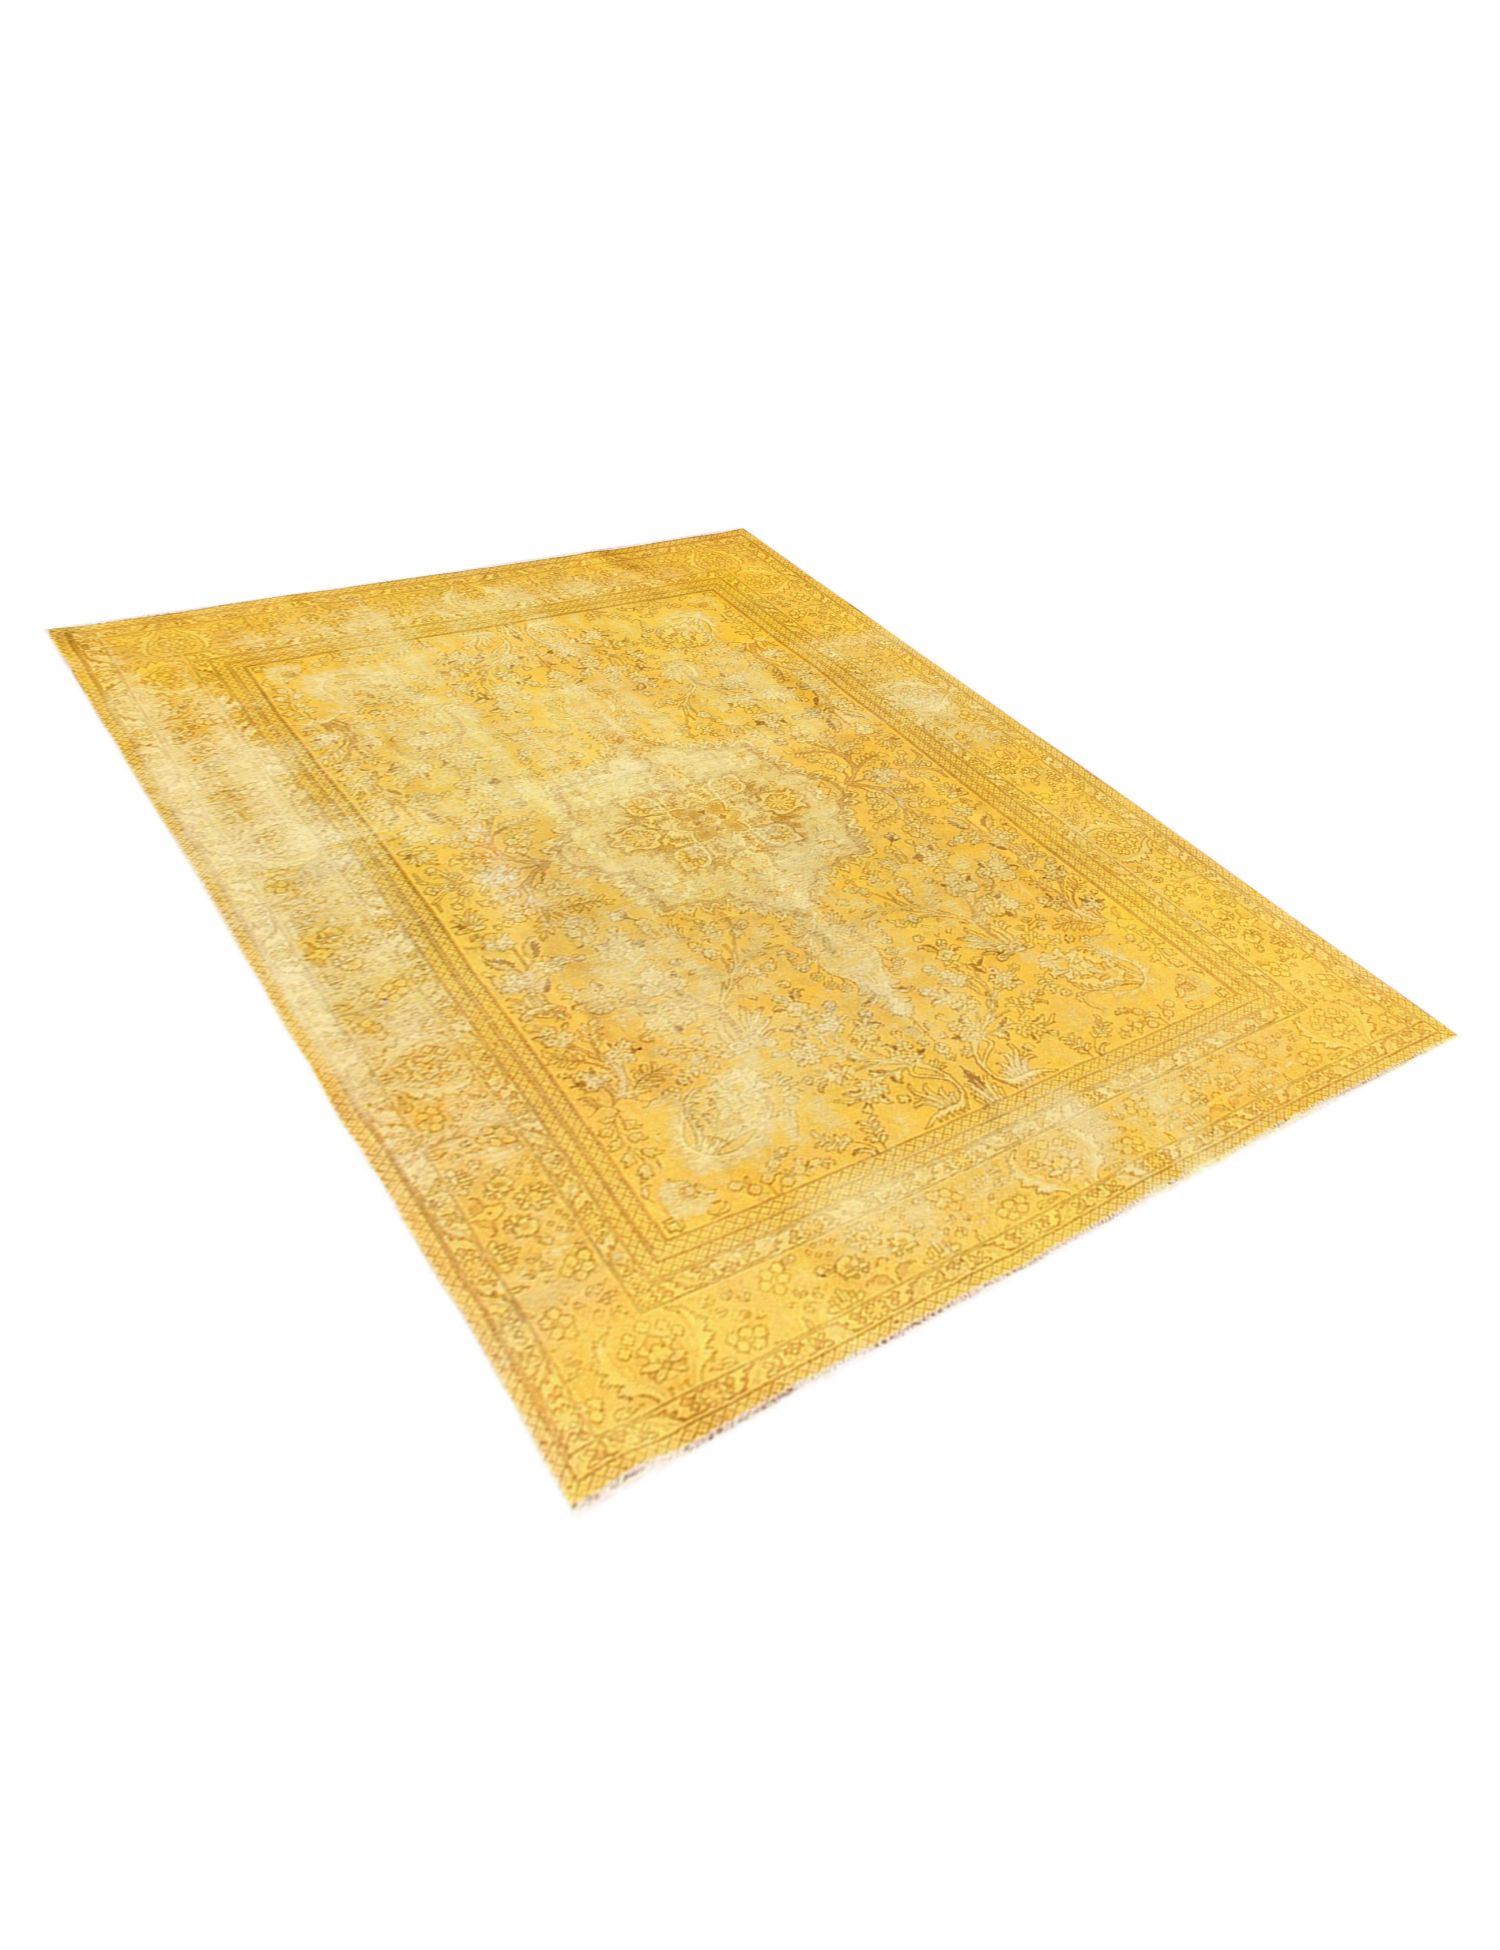 Persischer Vintage Teppich  gelb <br/>343 x 250 cm